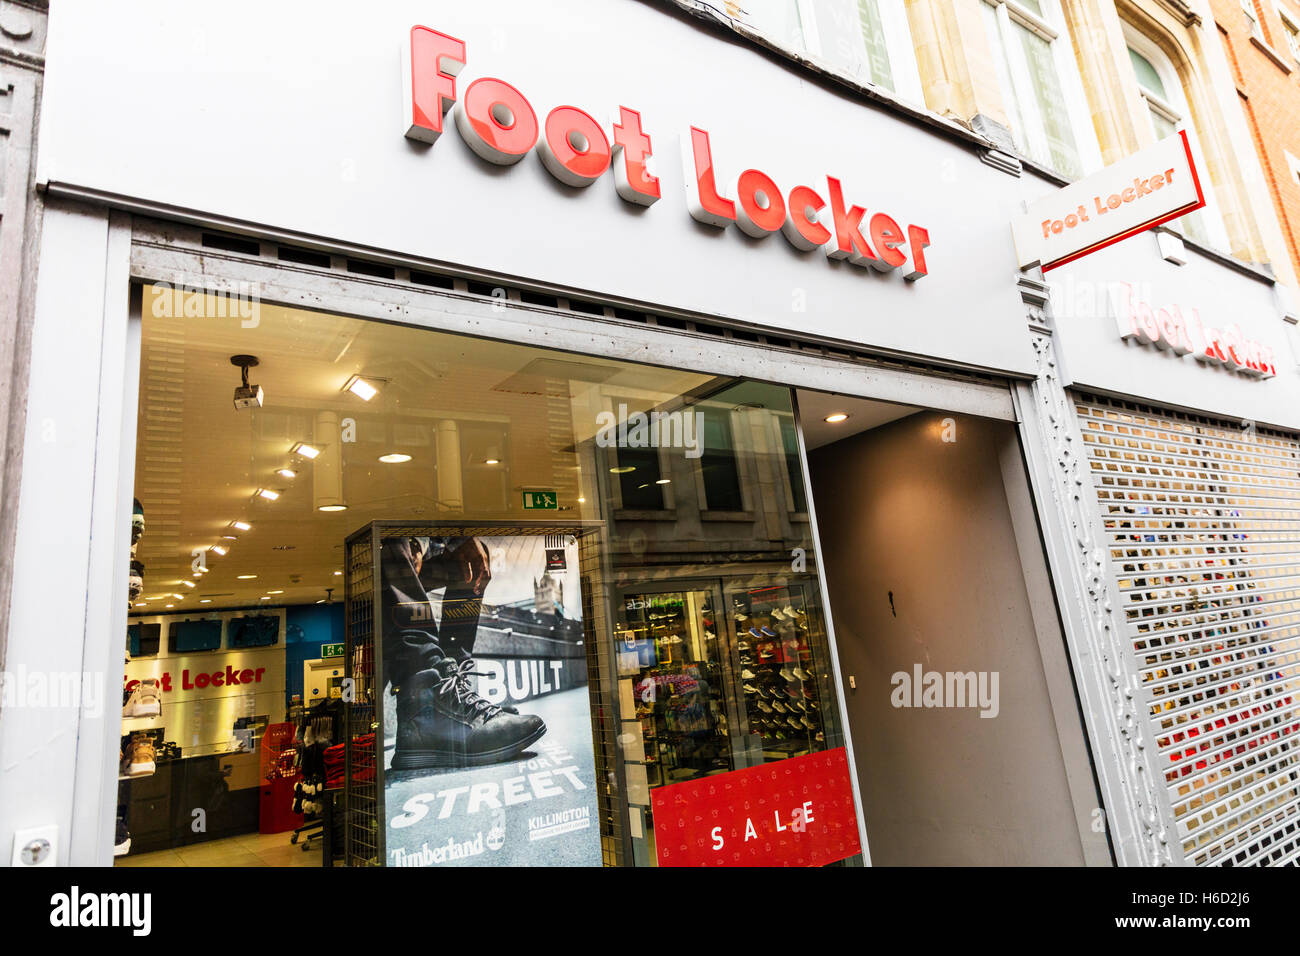 Boutique magasin Foot Locker extérieur signe avant la chaîne high street  magasin de chaussures magasin de vente afficher la fenêtre UK Angleterre GO  Photo Stock - Alamy